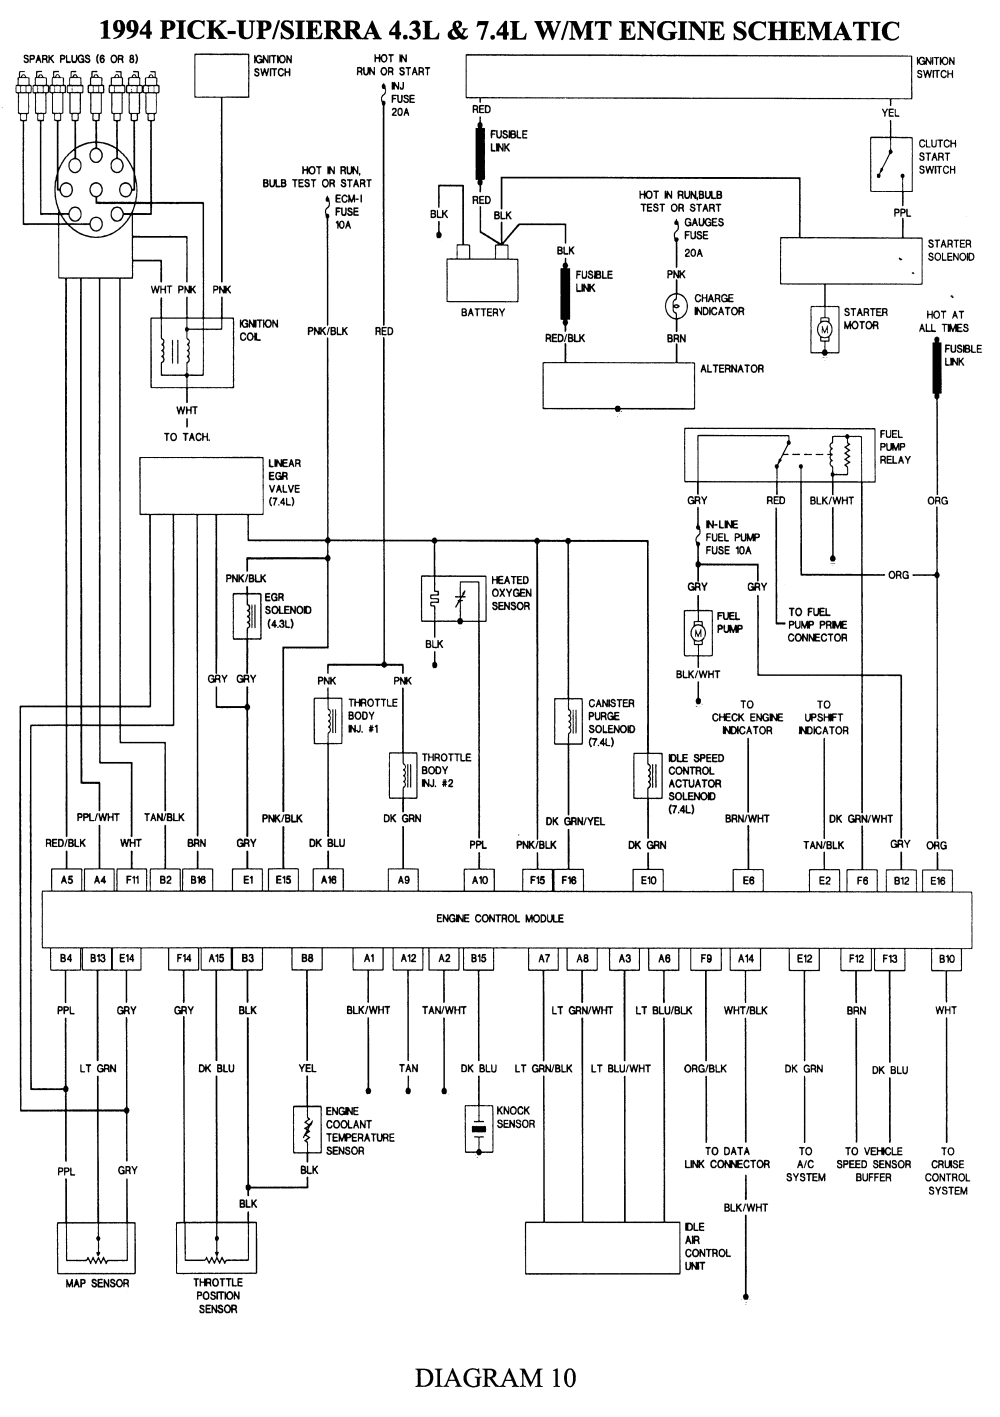 1994 gmc wiring diagram wiring diagram name 1994 gmc topkick wiring diagram 1994 gmc topkick wiring diagram